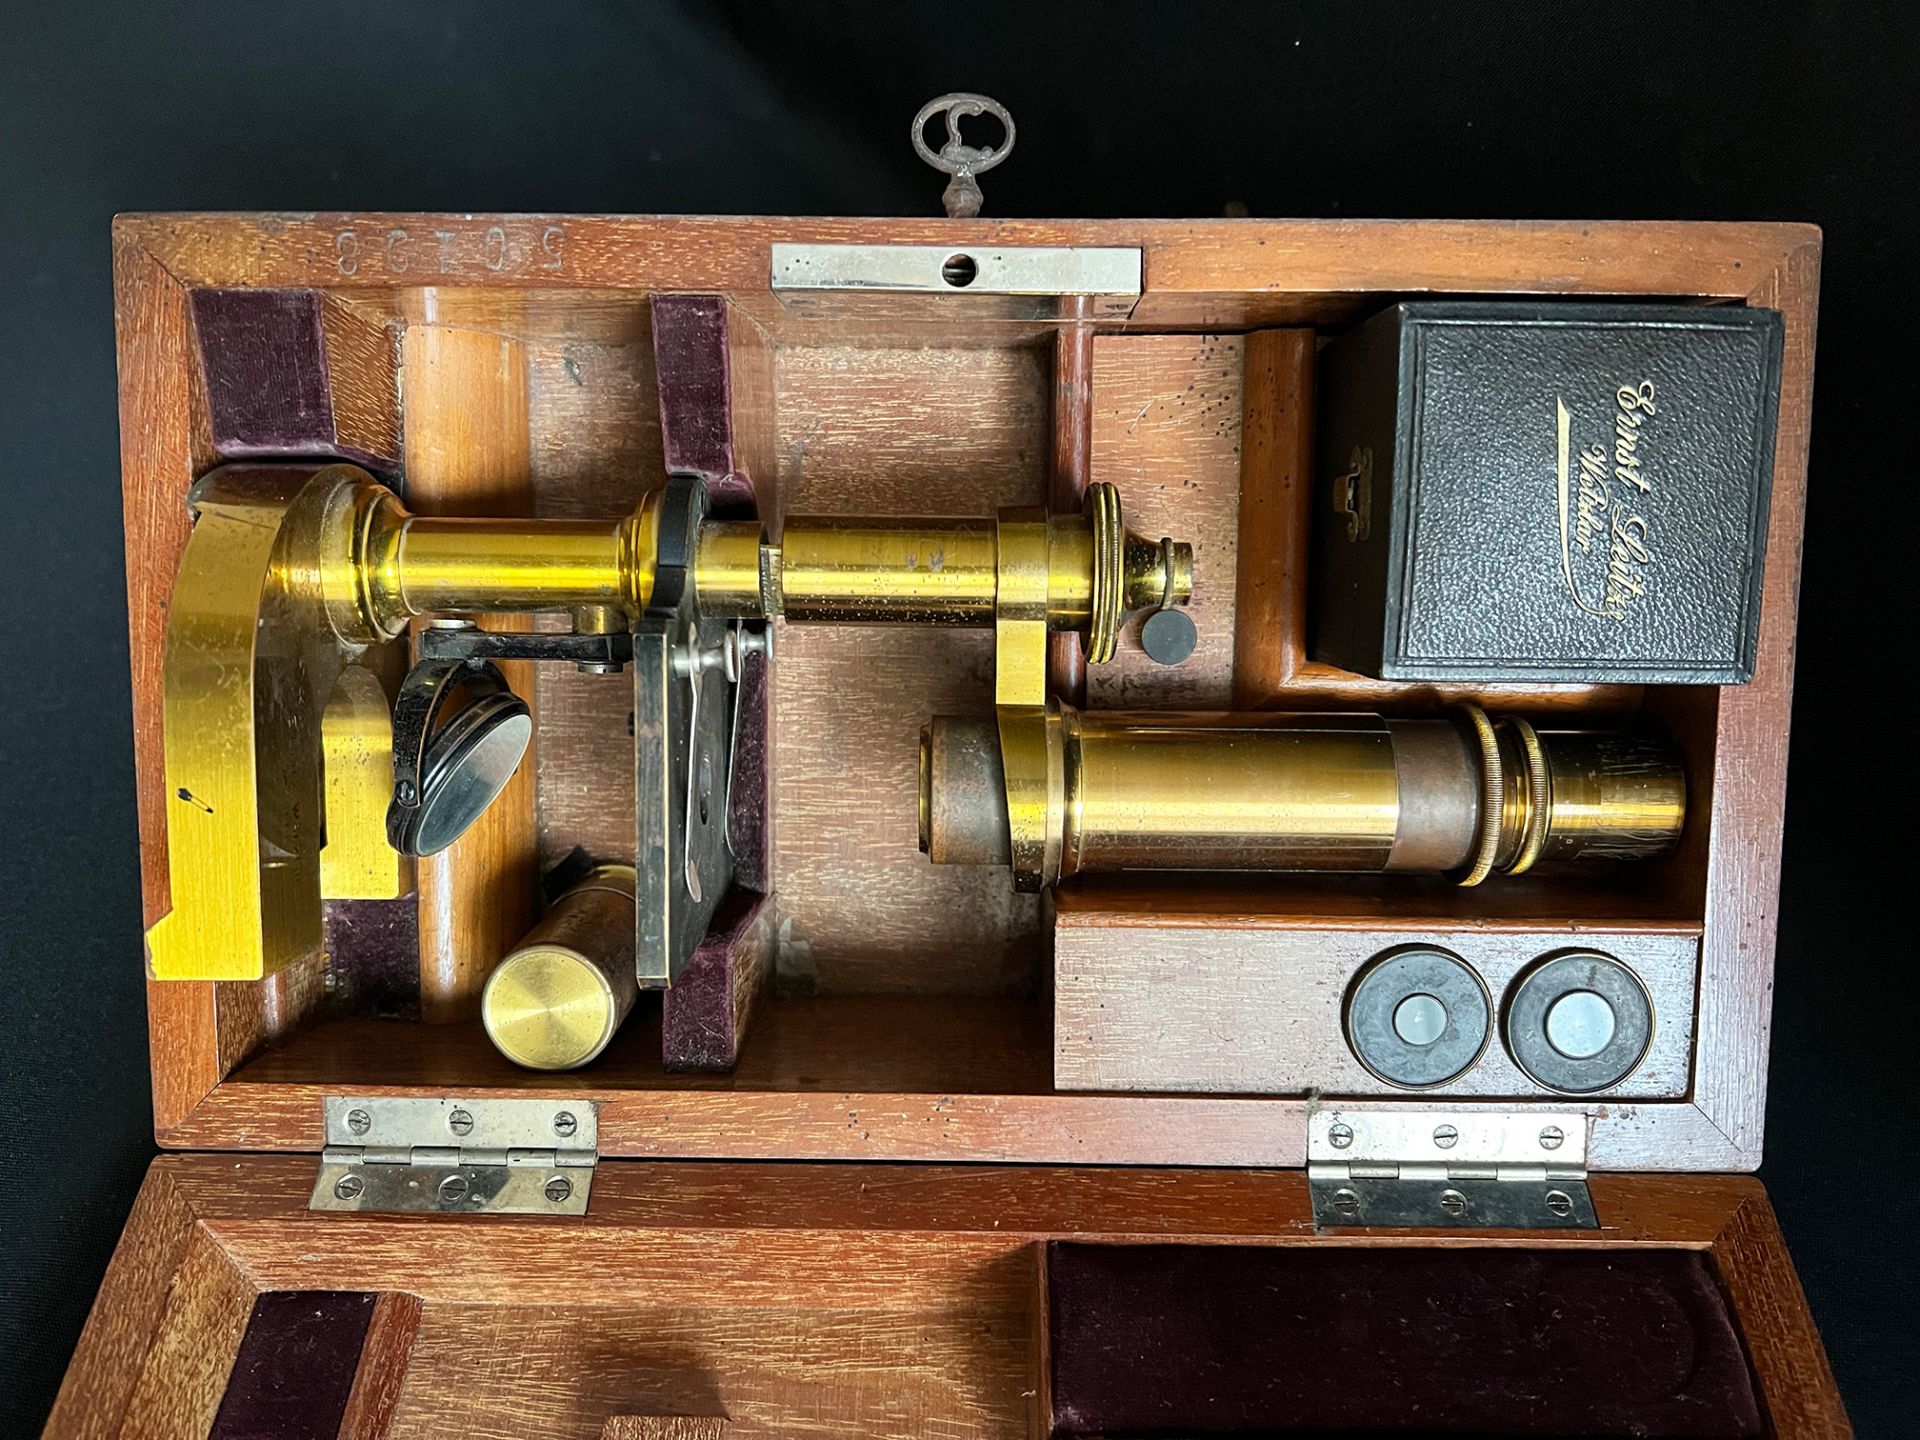 Messing-Mikroskop "E. Leitz, Wetzlar" im Holzkasten, um 1900. Signiert auf Hufeisenfuß, Serien-Nr. - Bild 8 aus 11